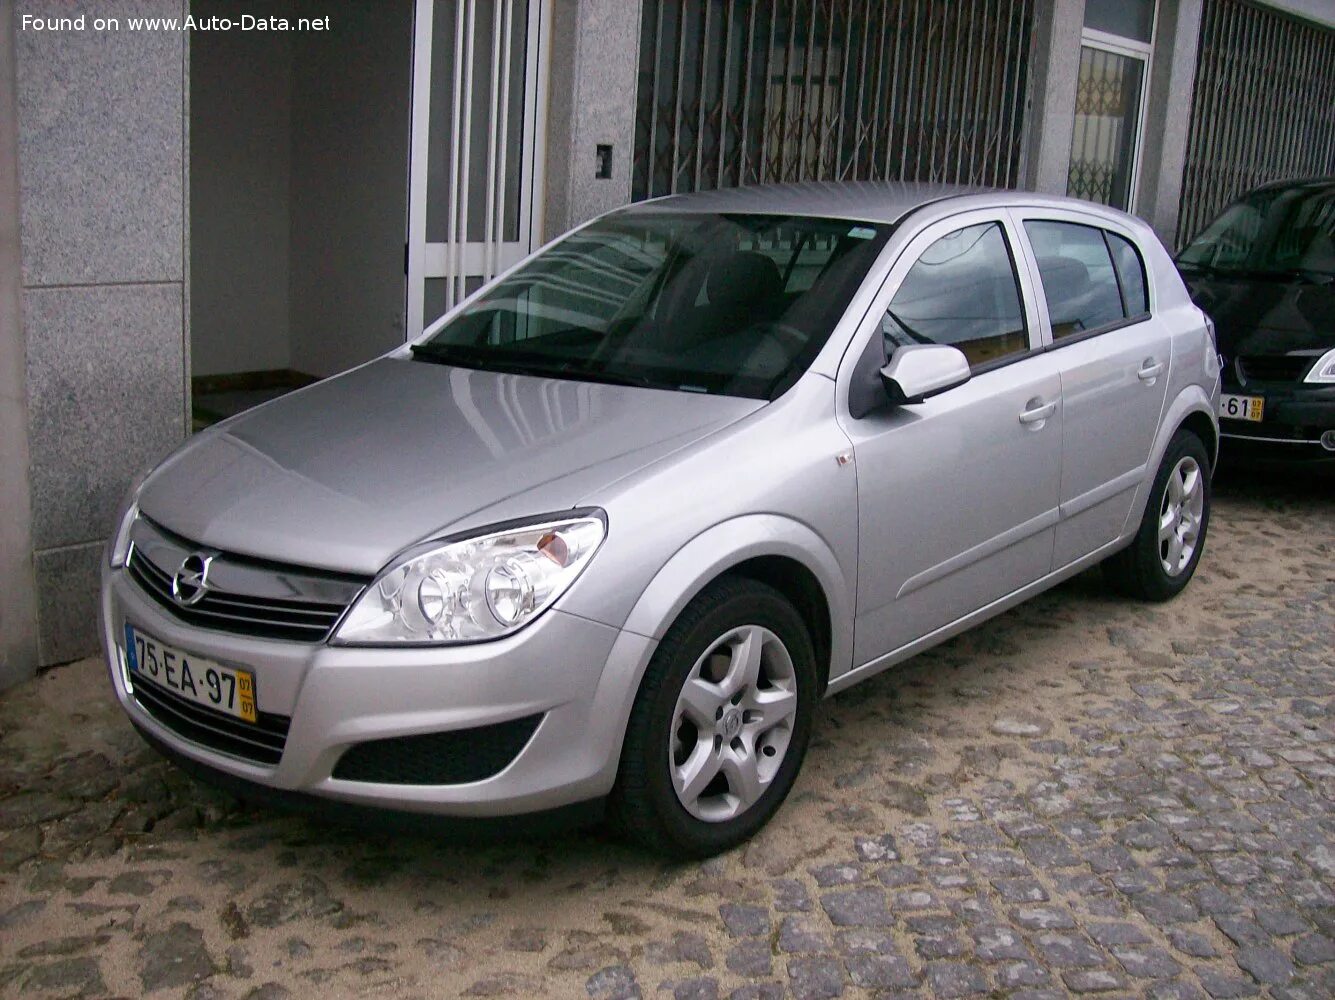 Оцинкованные опеля. Opel Astra h 2009. Opel Astra h 1.4. Opel Astra h 1.7.